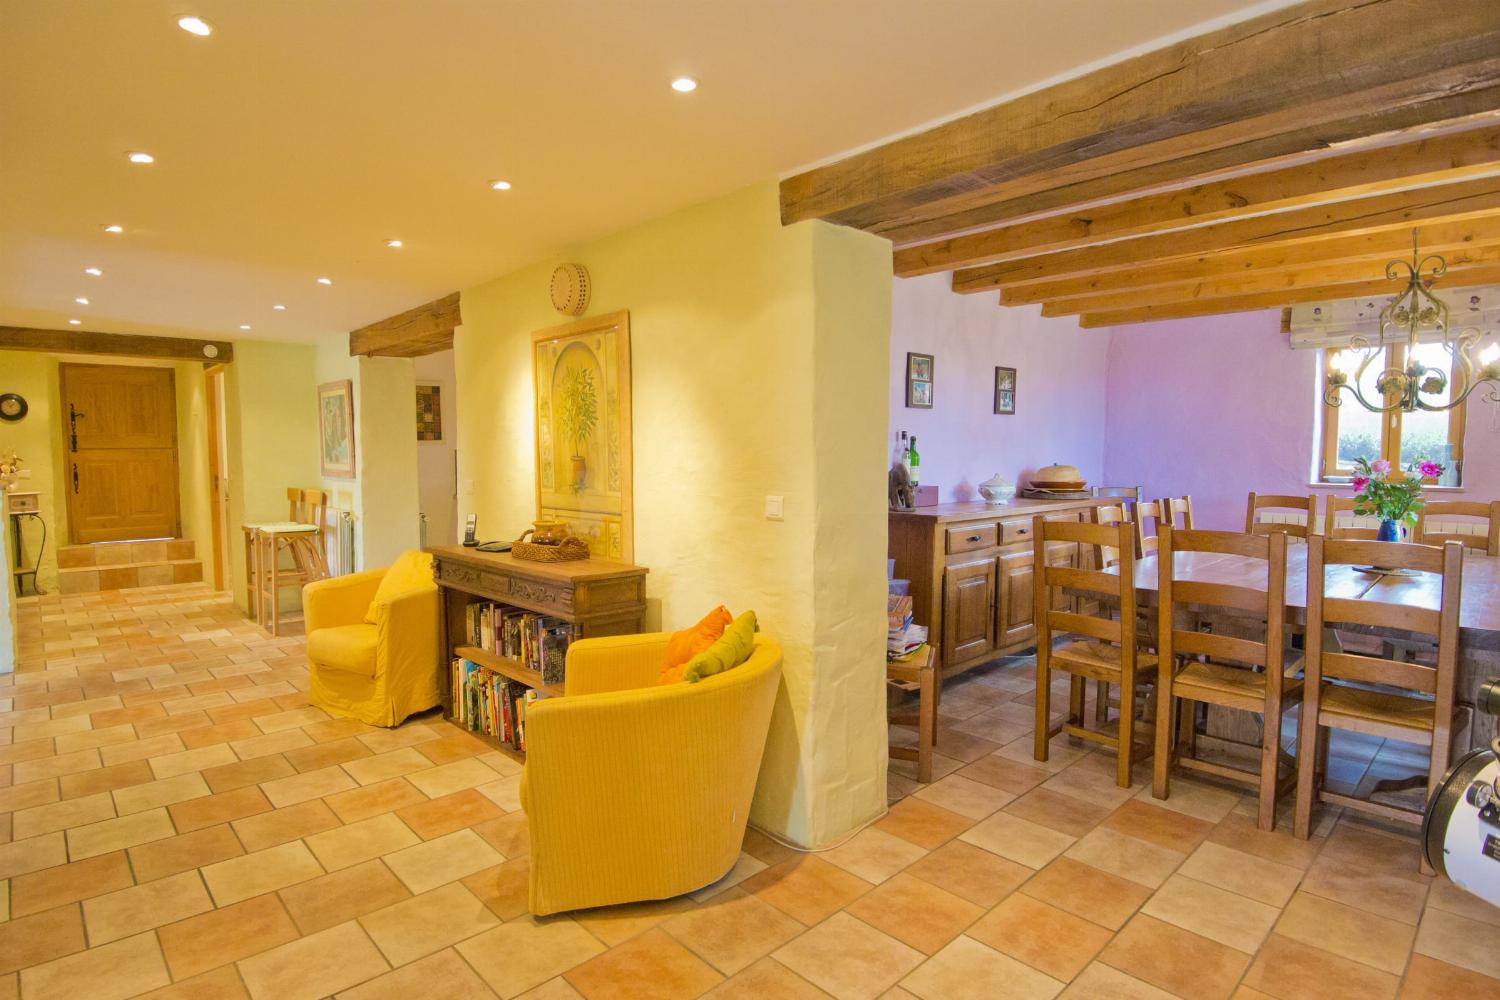 Dining room | Rental home in Tarn-en-Garonne